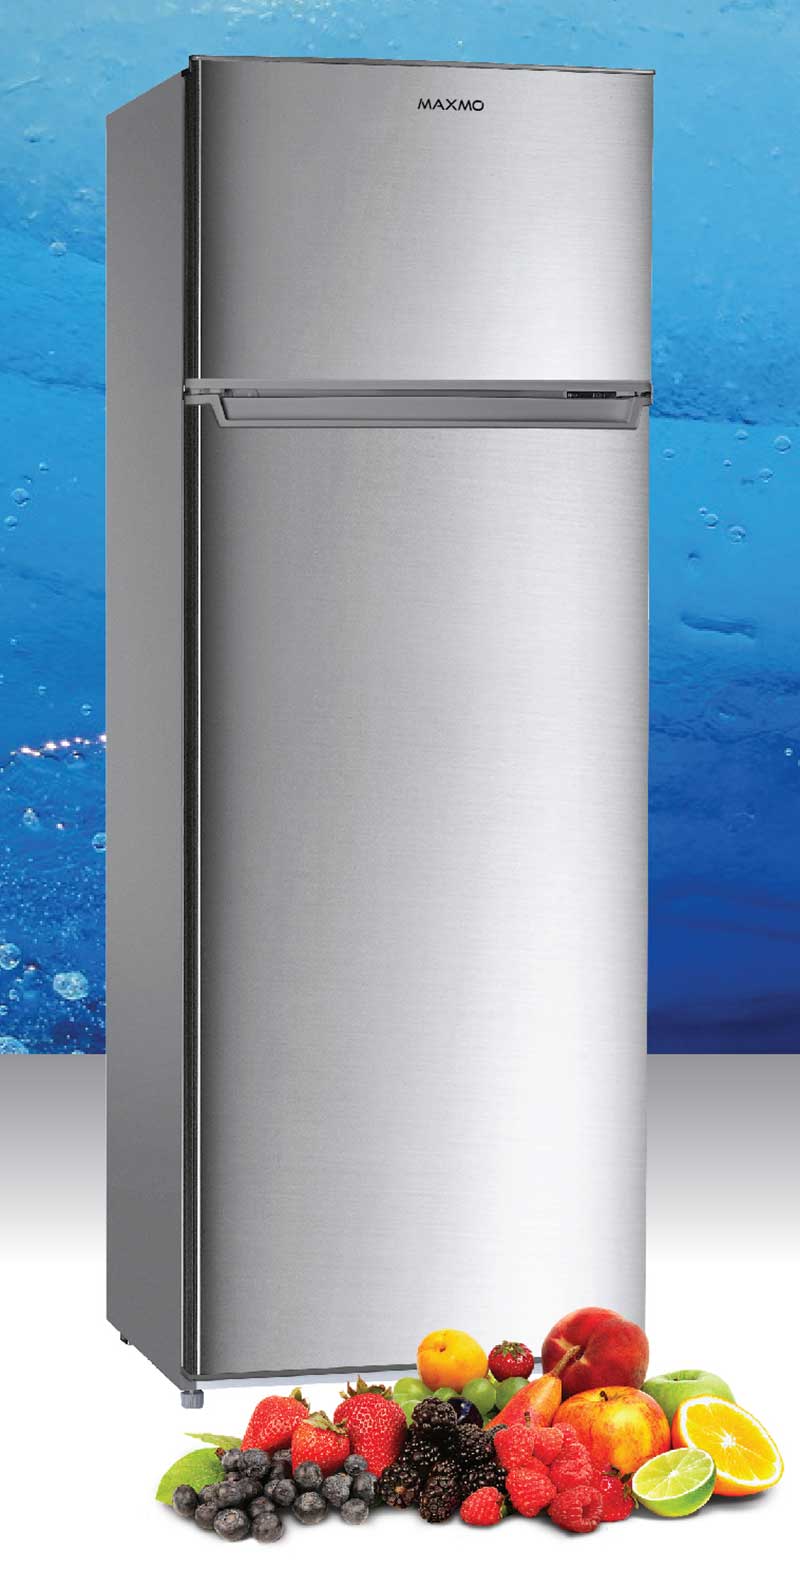 Maxmo-Refrigerator